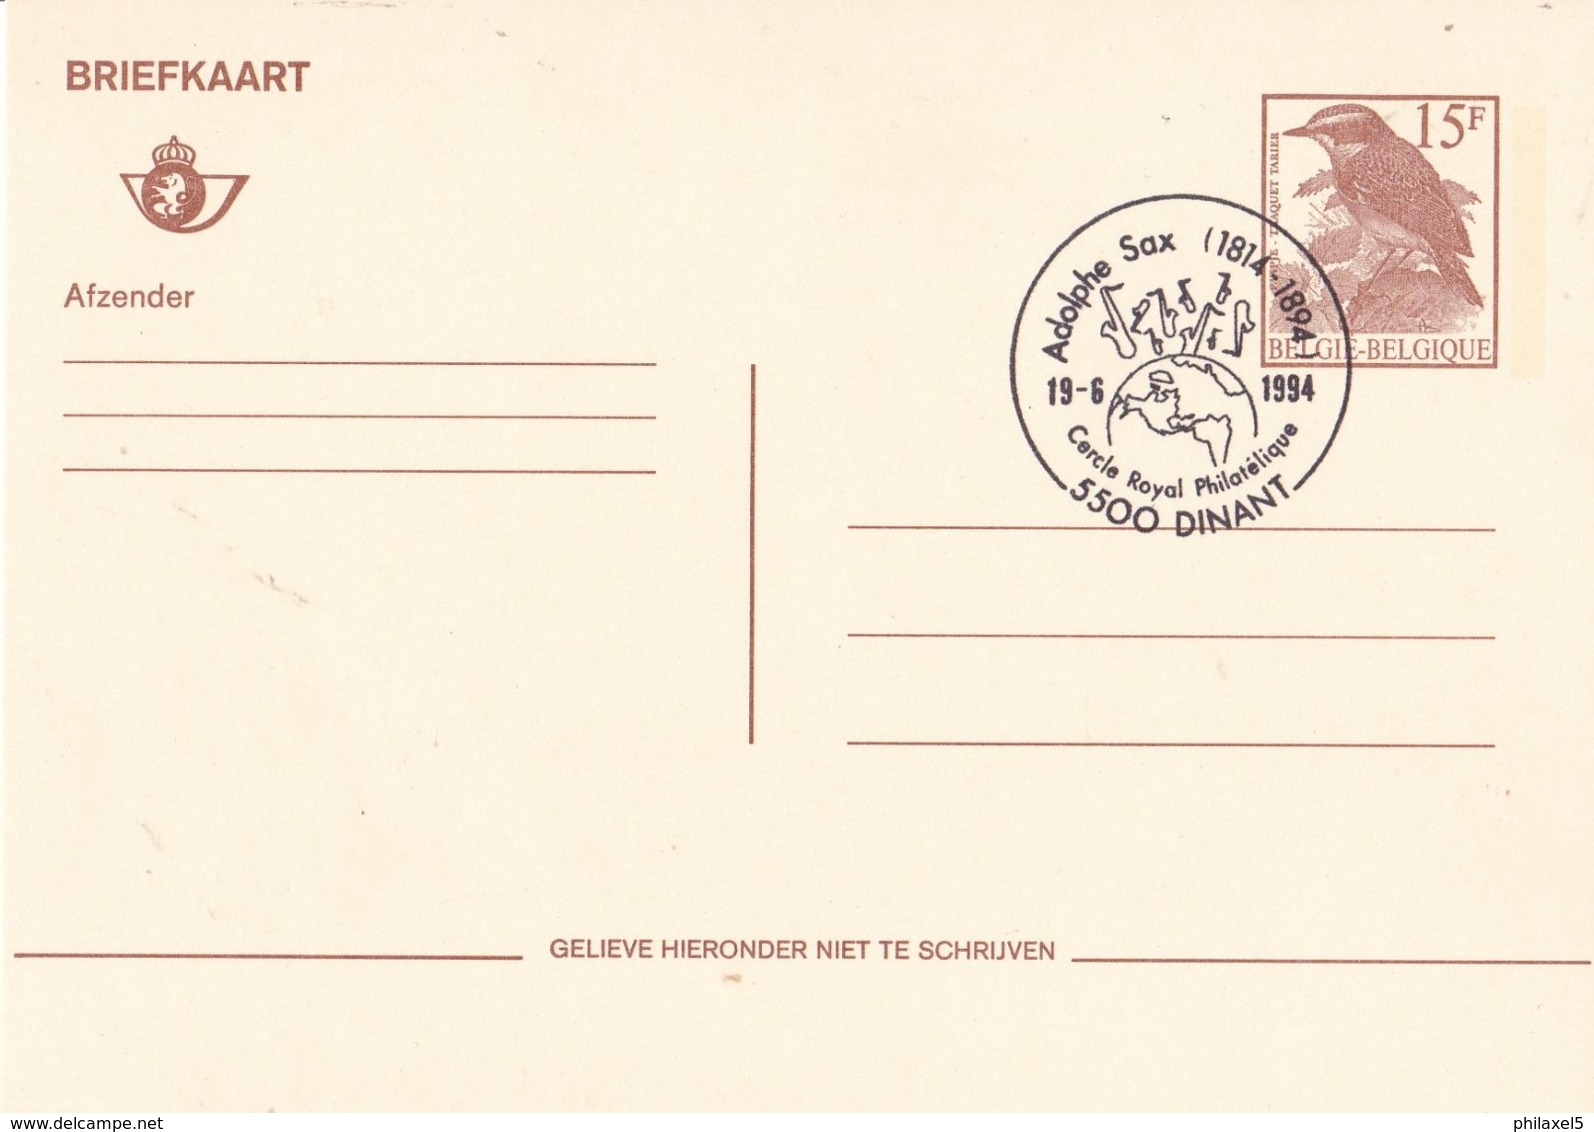 België - Tienen -Briefkaart - 100e Verjaardag Van Het Overlijden Van Adolphe Sax - (1994) - Documents Commémoratifs